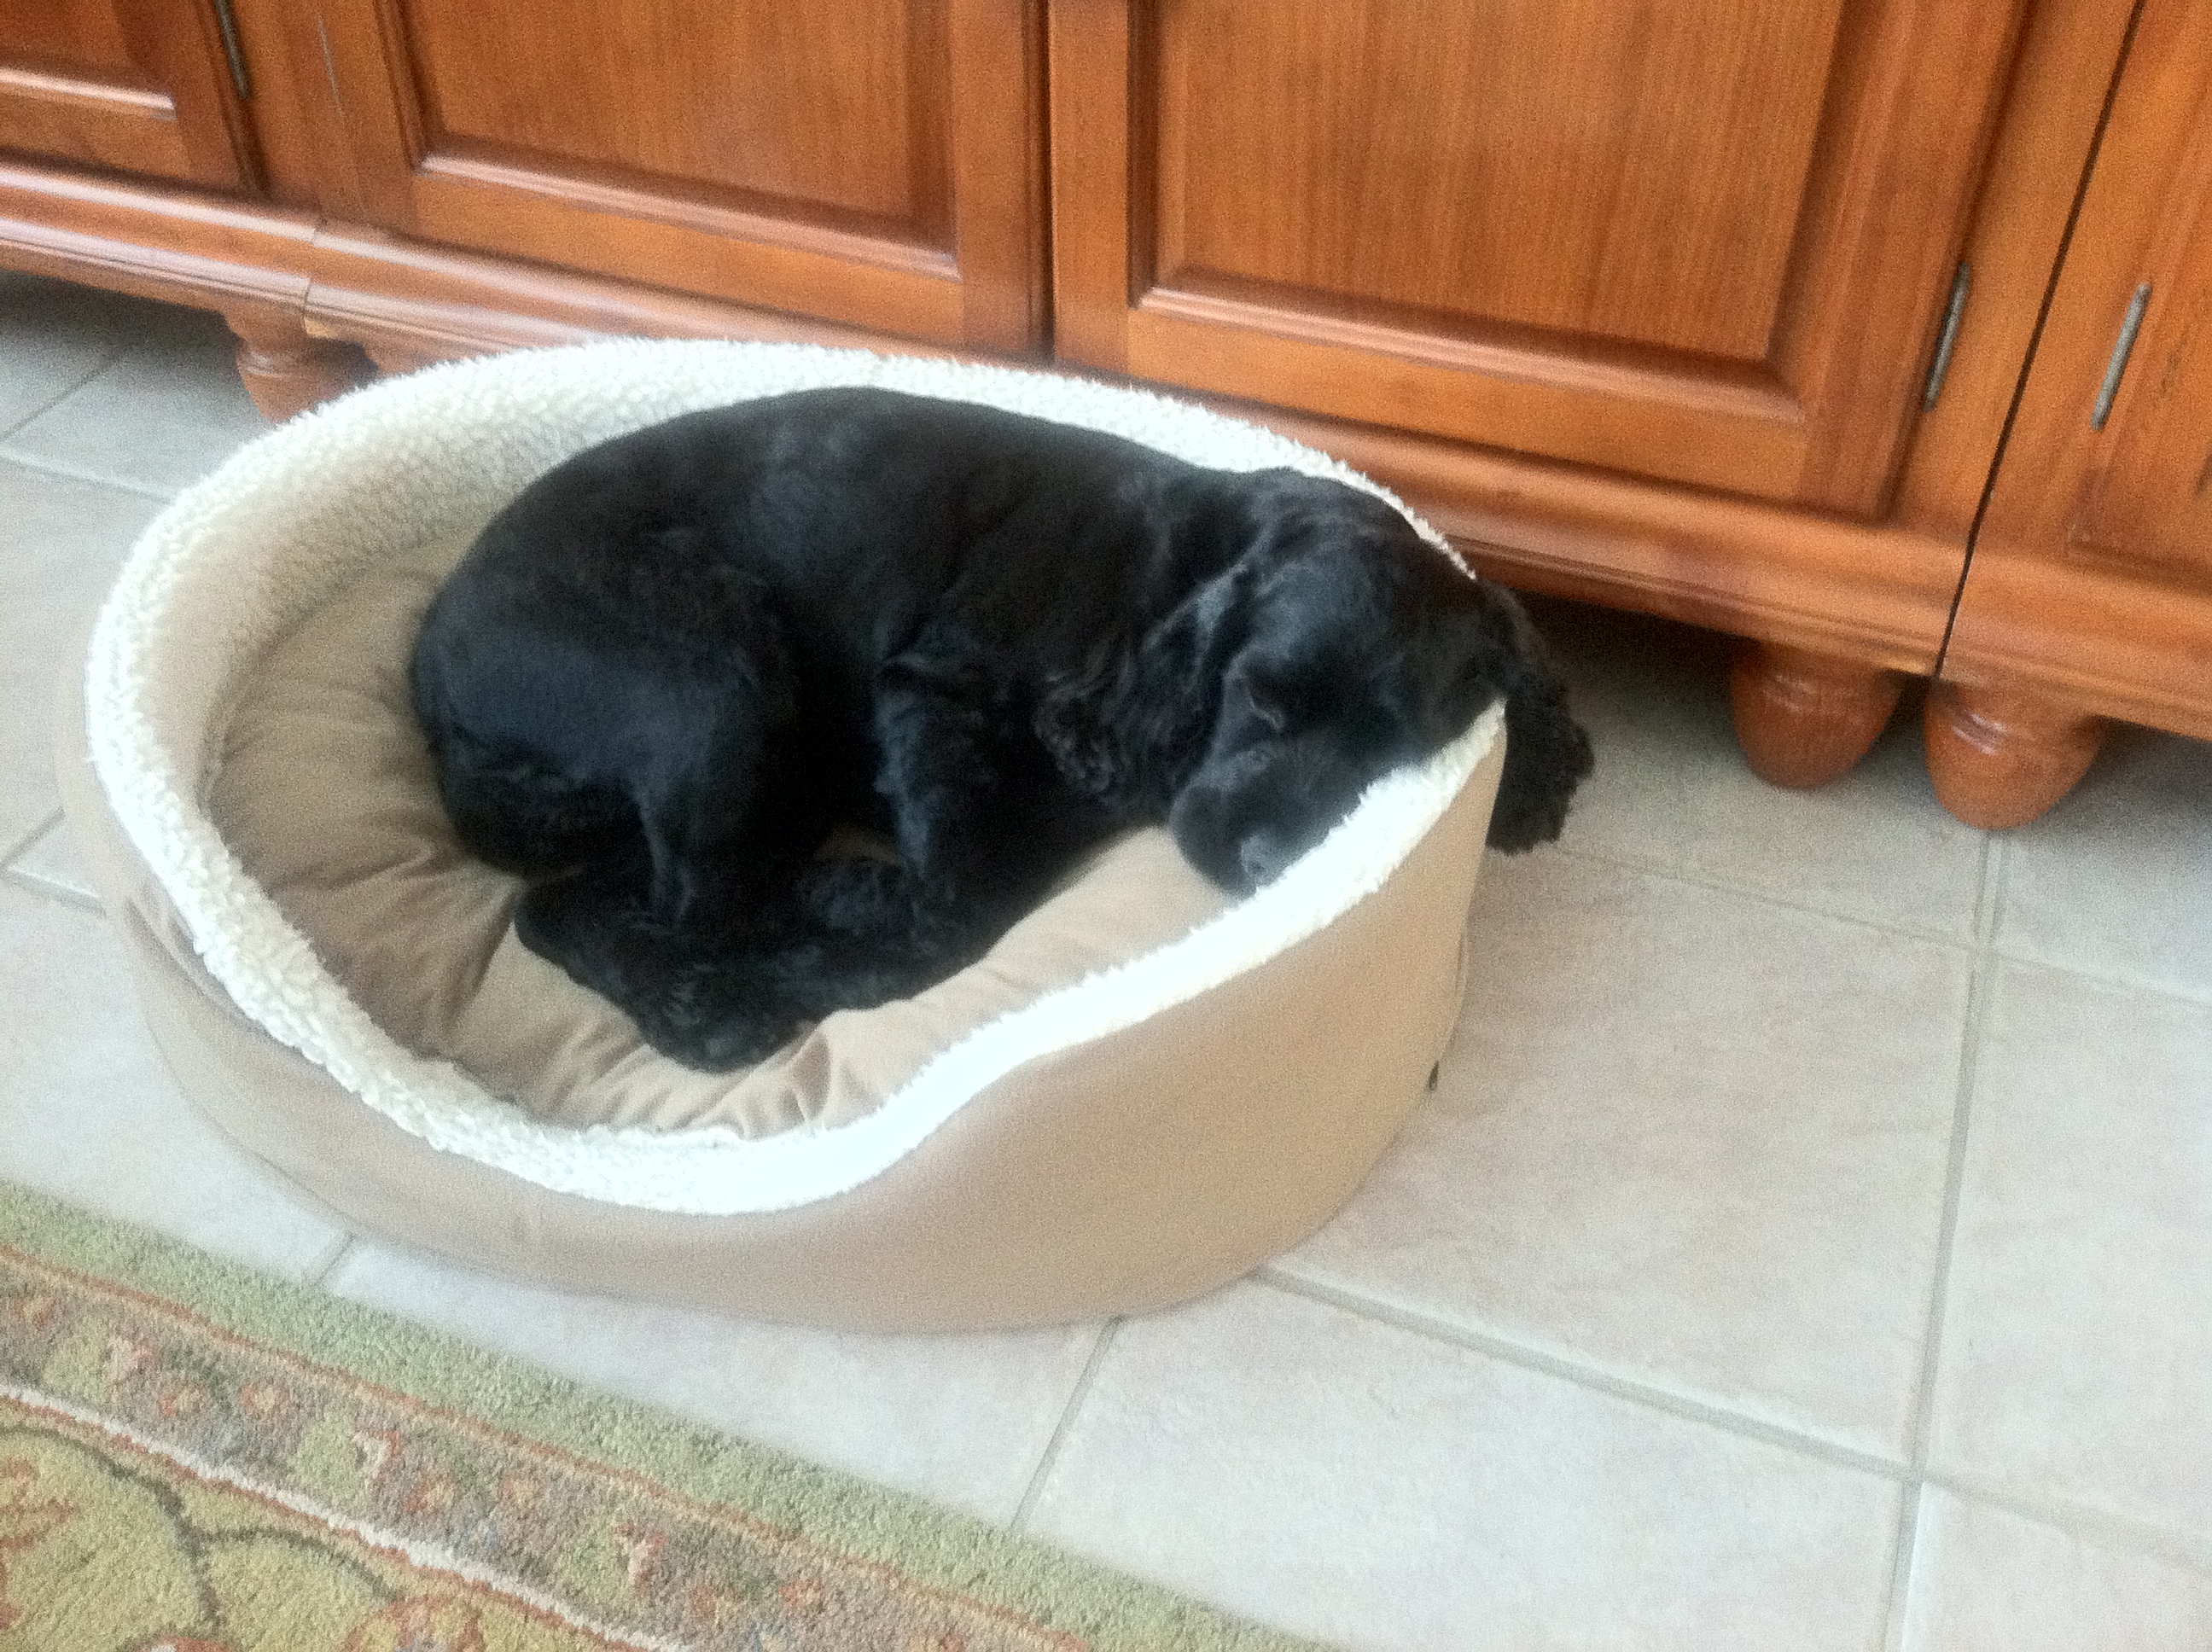 sadie-snoozing-in-her-favorite-bed